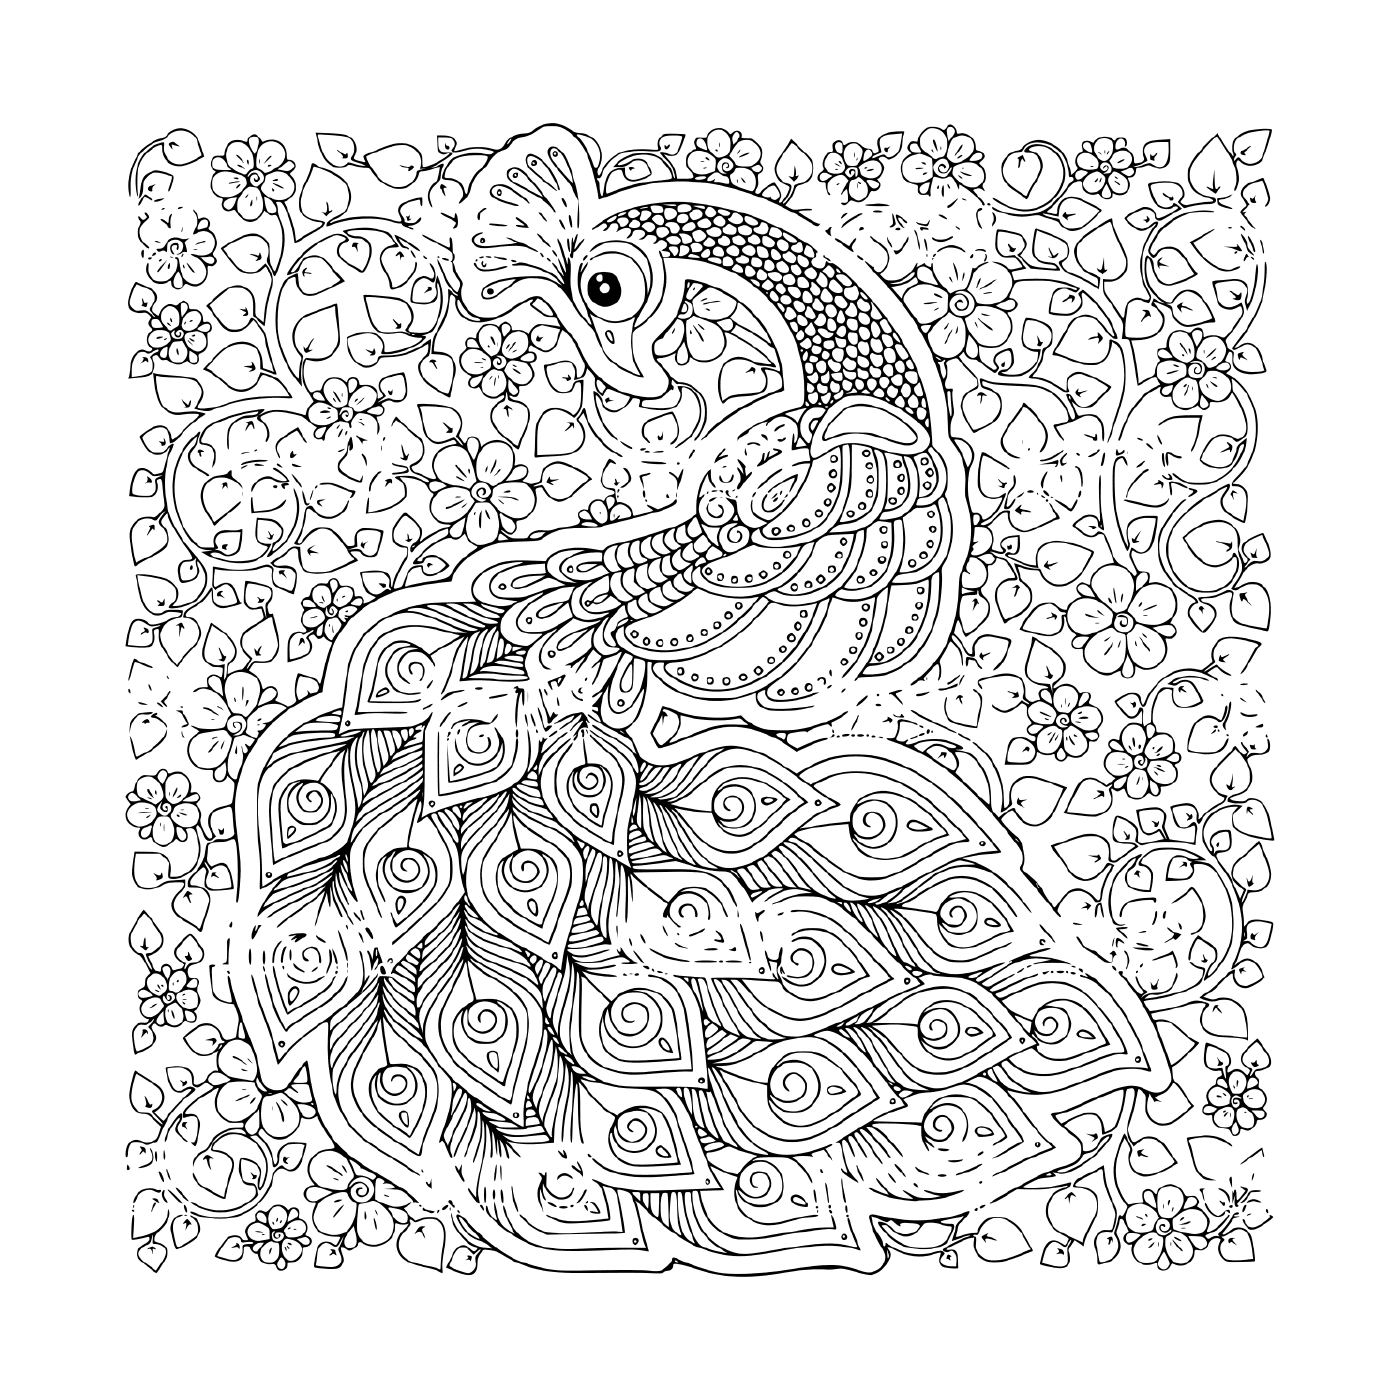 coloriage paon oiseau symbole de fertilite et immortalite en inde